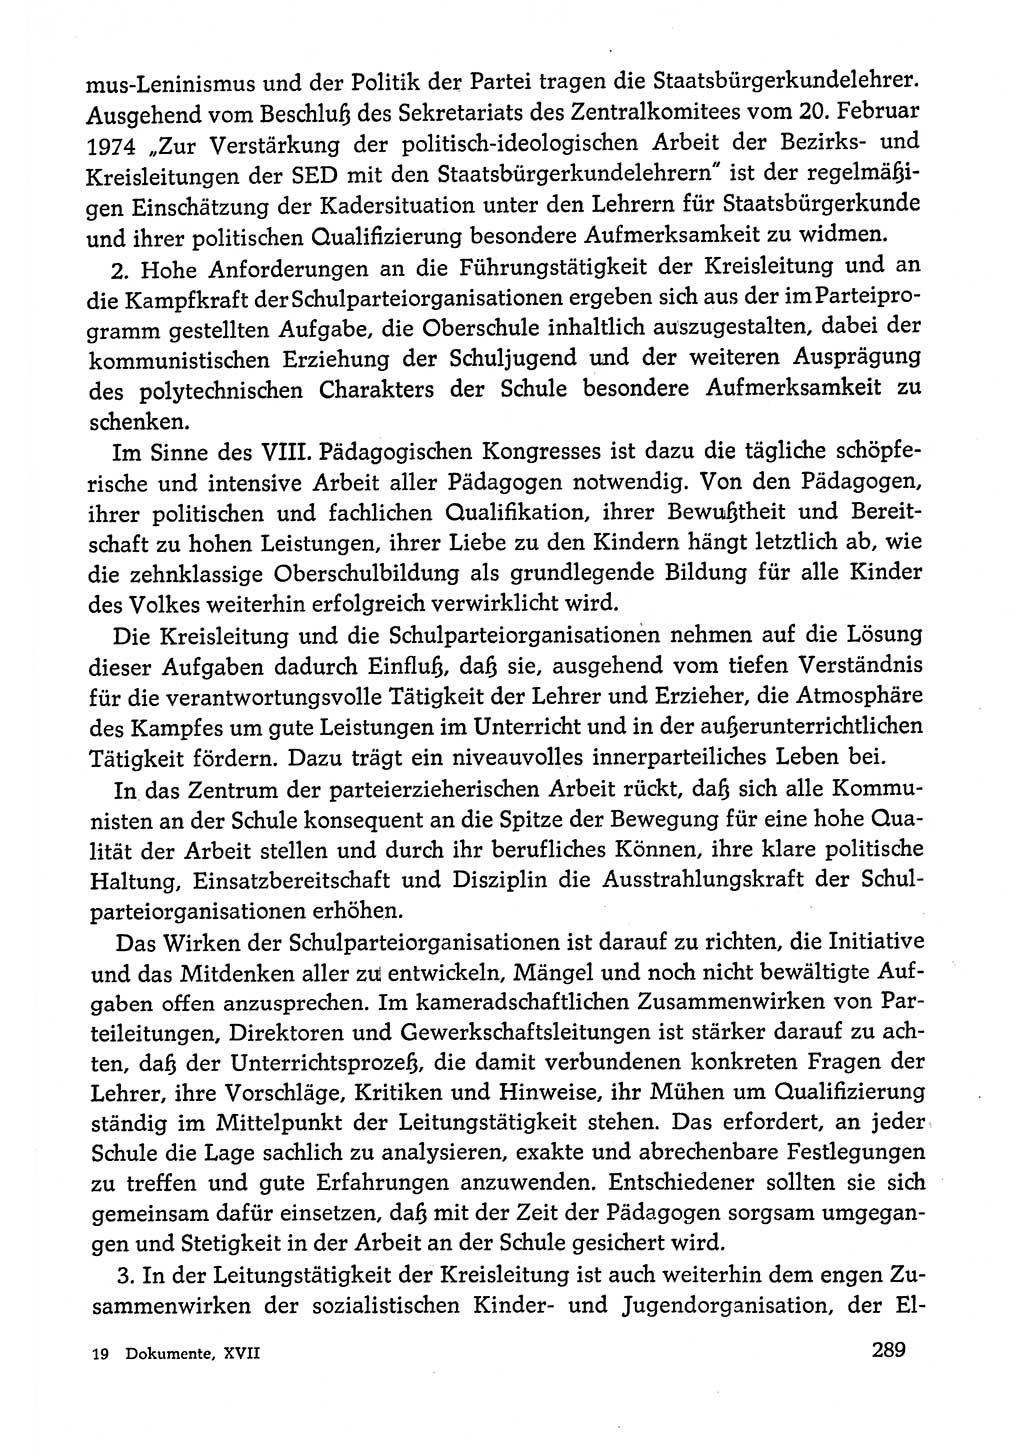 Dokumente der Sozialistischen Einheitspartei Deutschlands (SED) [Deutsche Demokratische Republik (DDR)] 1978-1979, Seite 289 (Dok. SED DDR 1978-1979, S. 289)